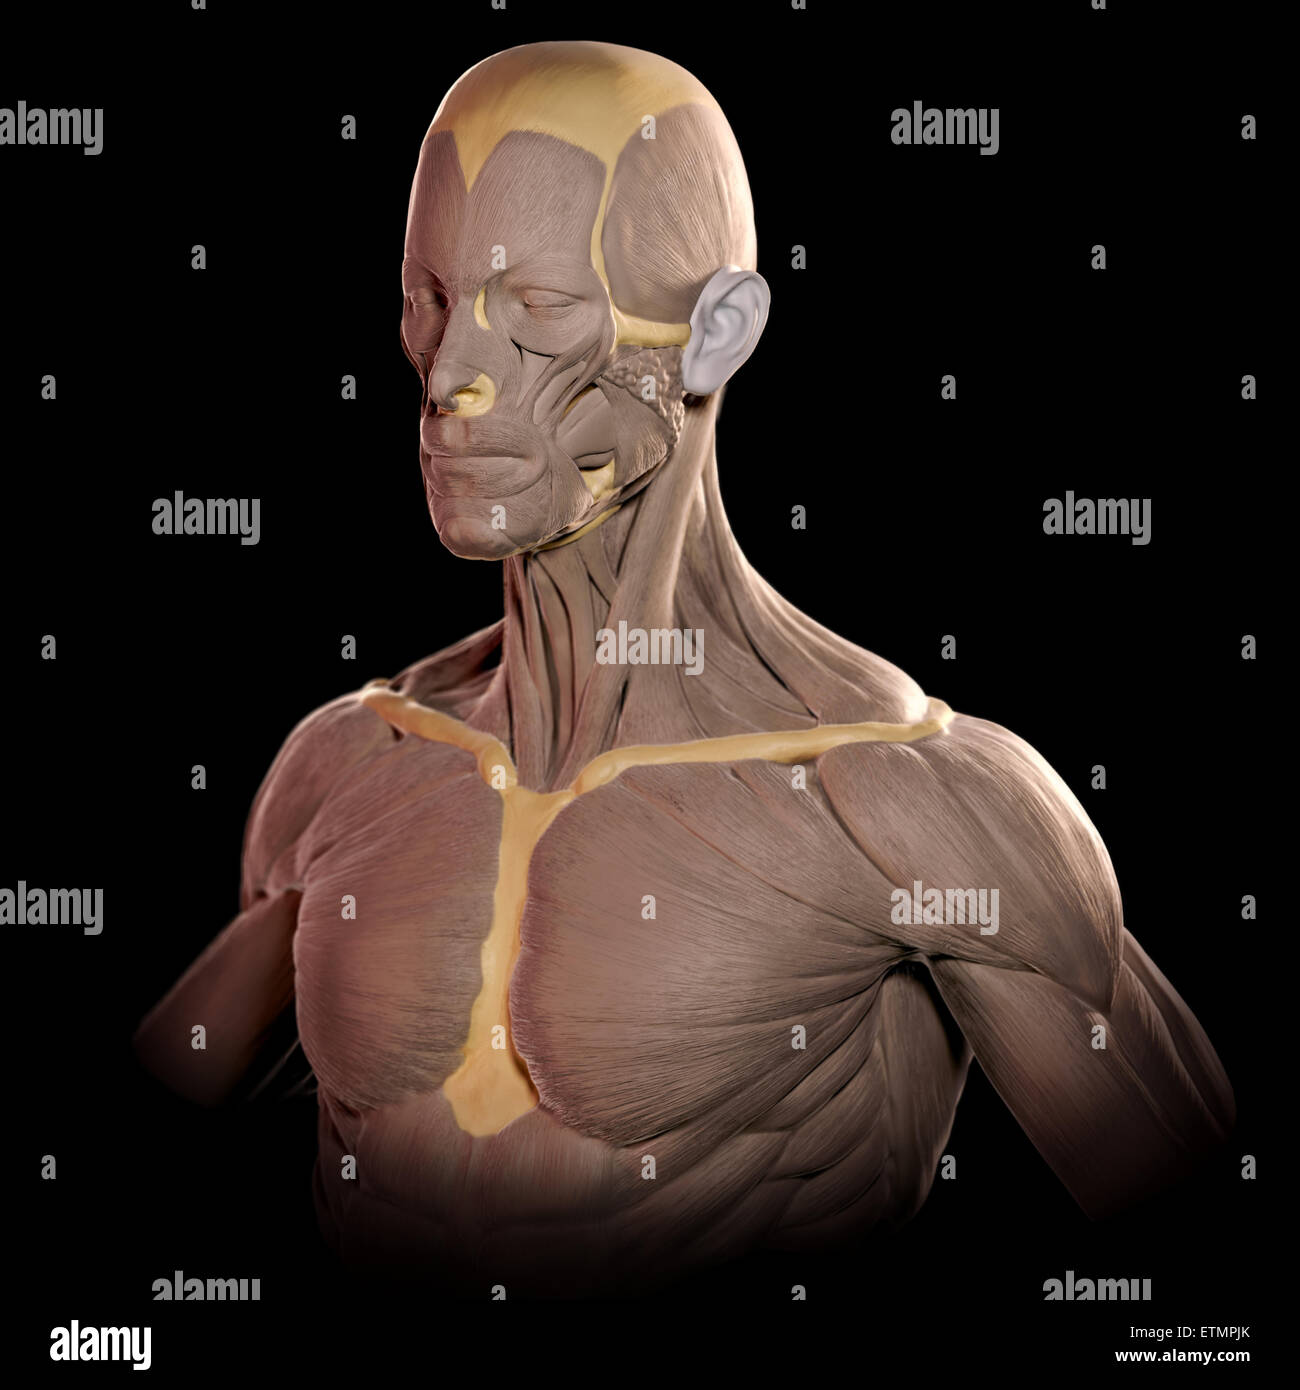 Konzeptbild im Stil von einem Tonmodell der Muskeln des Gesichts und des oberen Körpers. Stockfoto